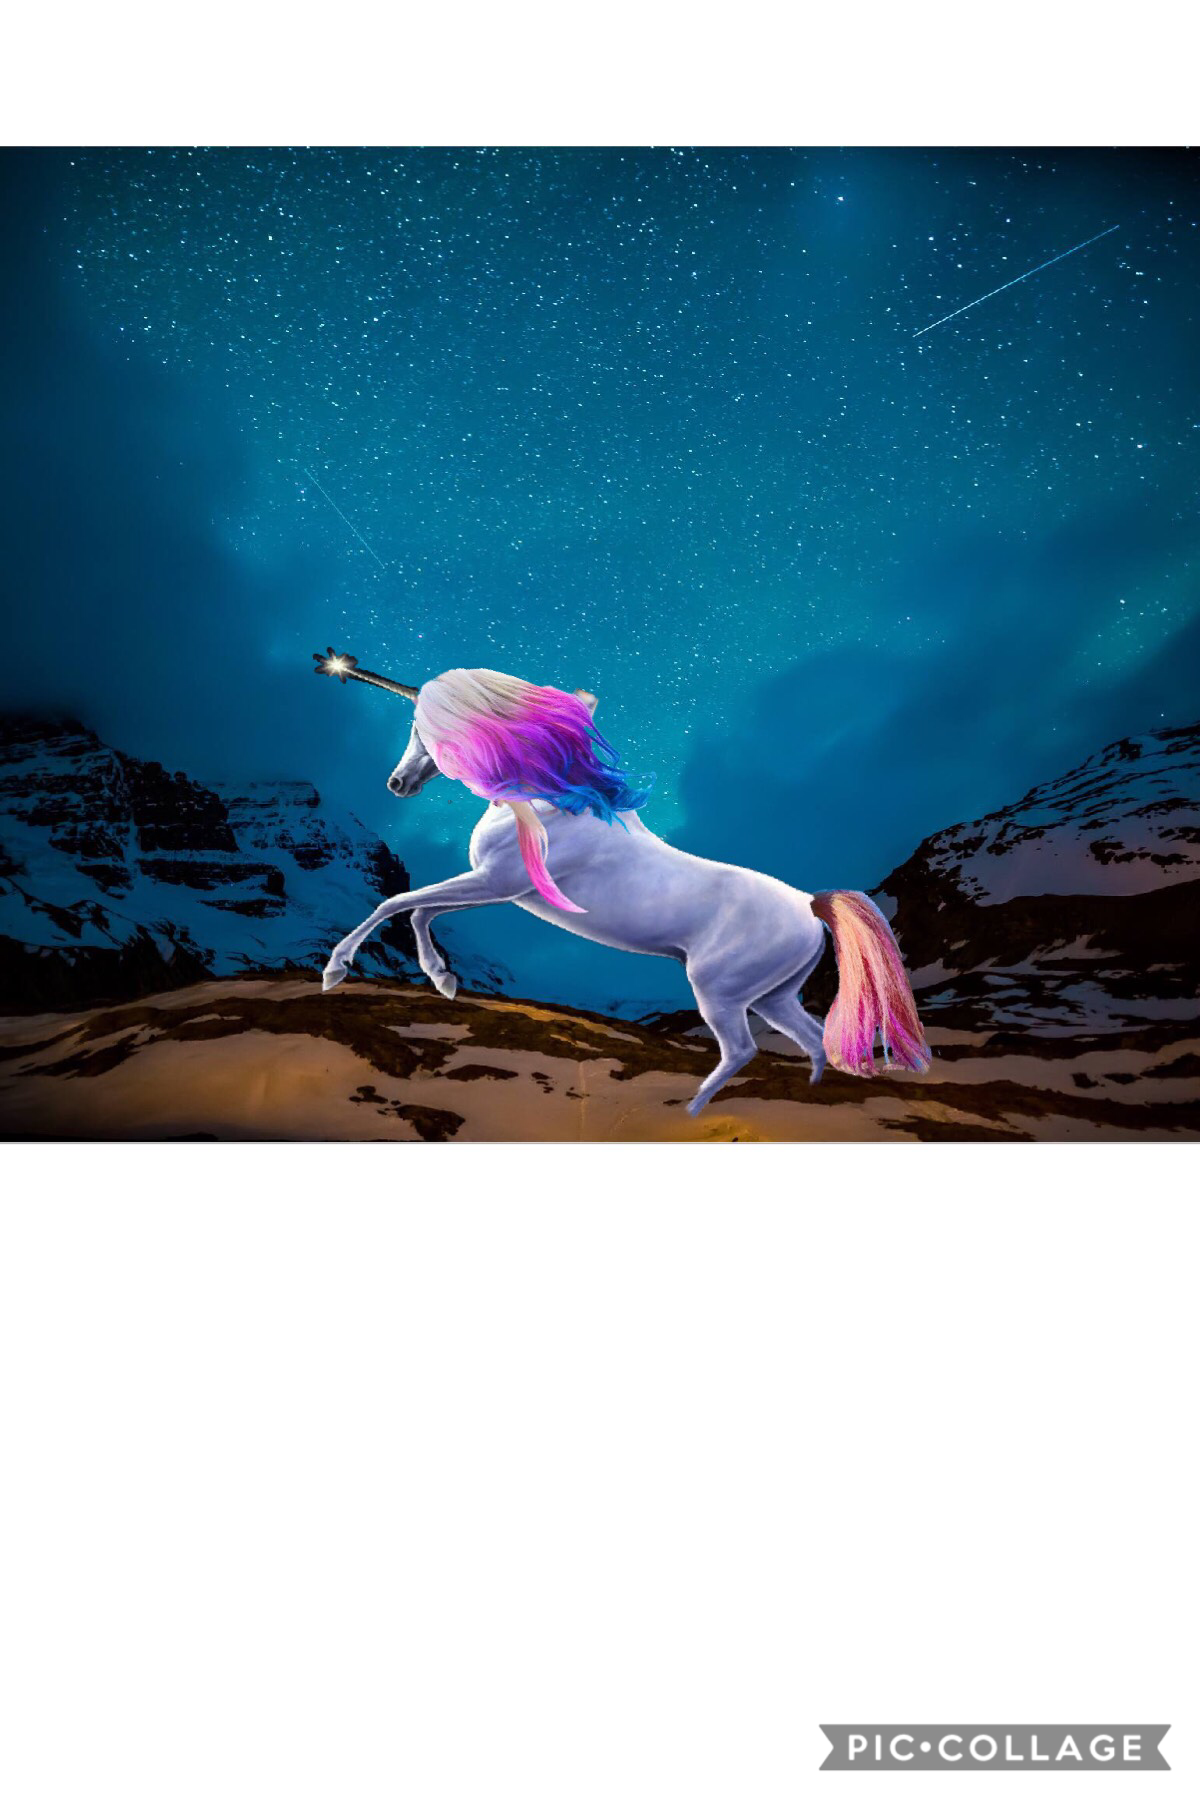 I decided to photoshop Wengie’s hair onto a beautiful, elegant unicorn.